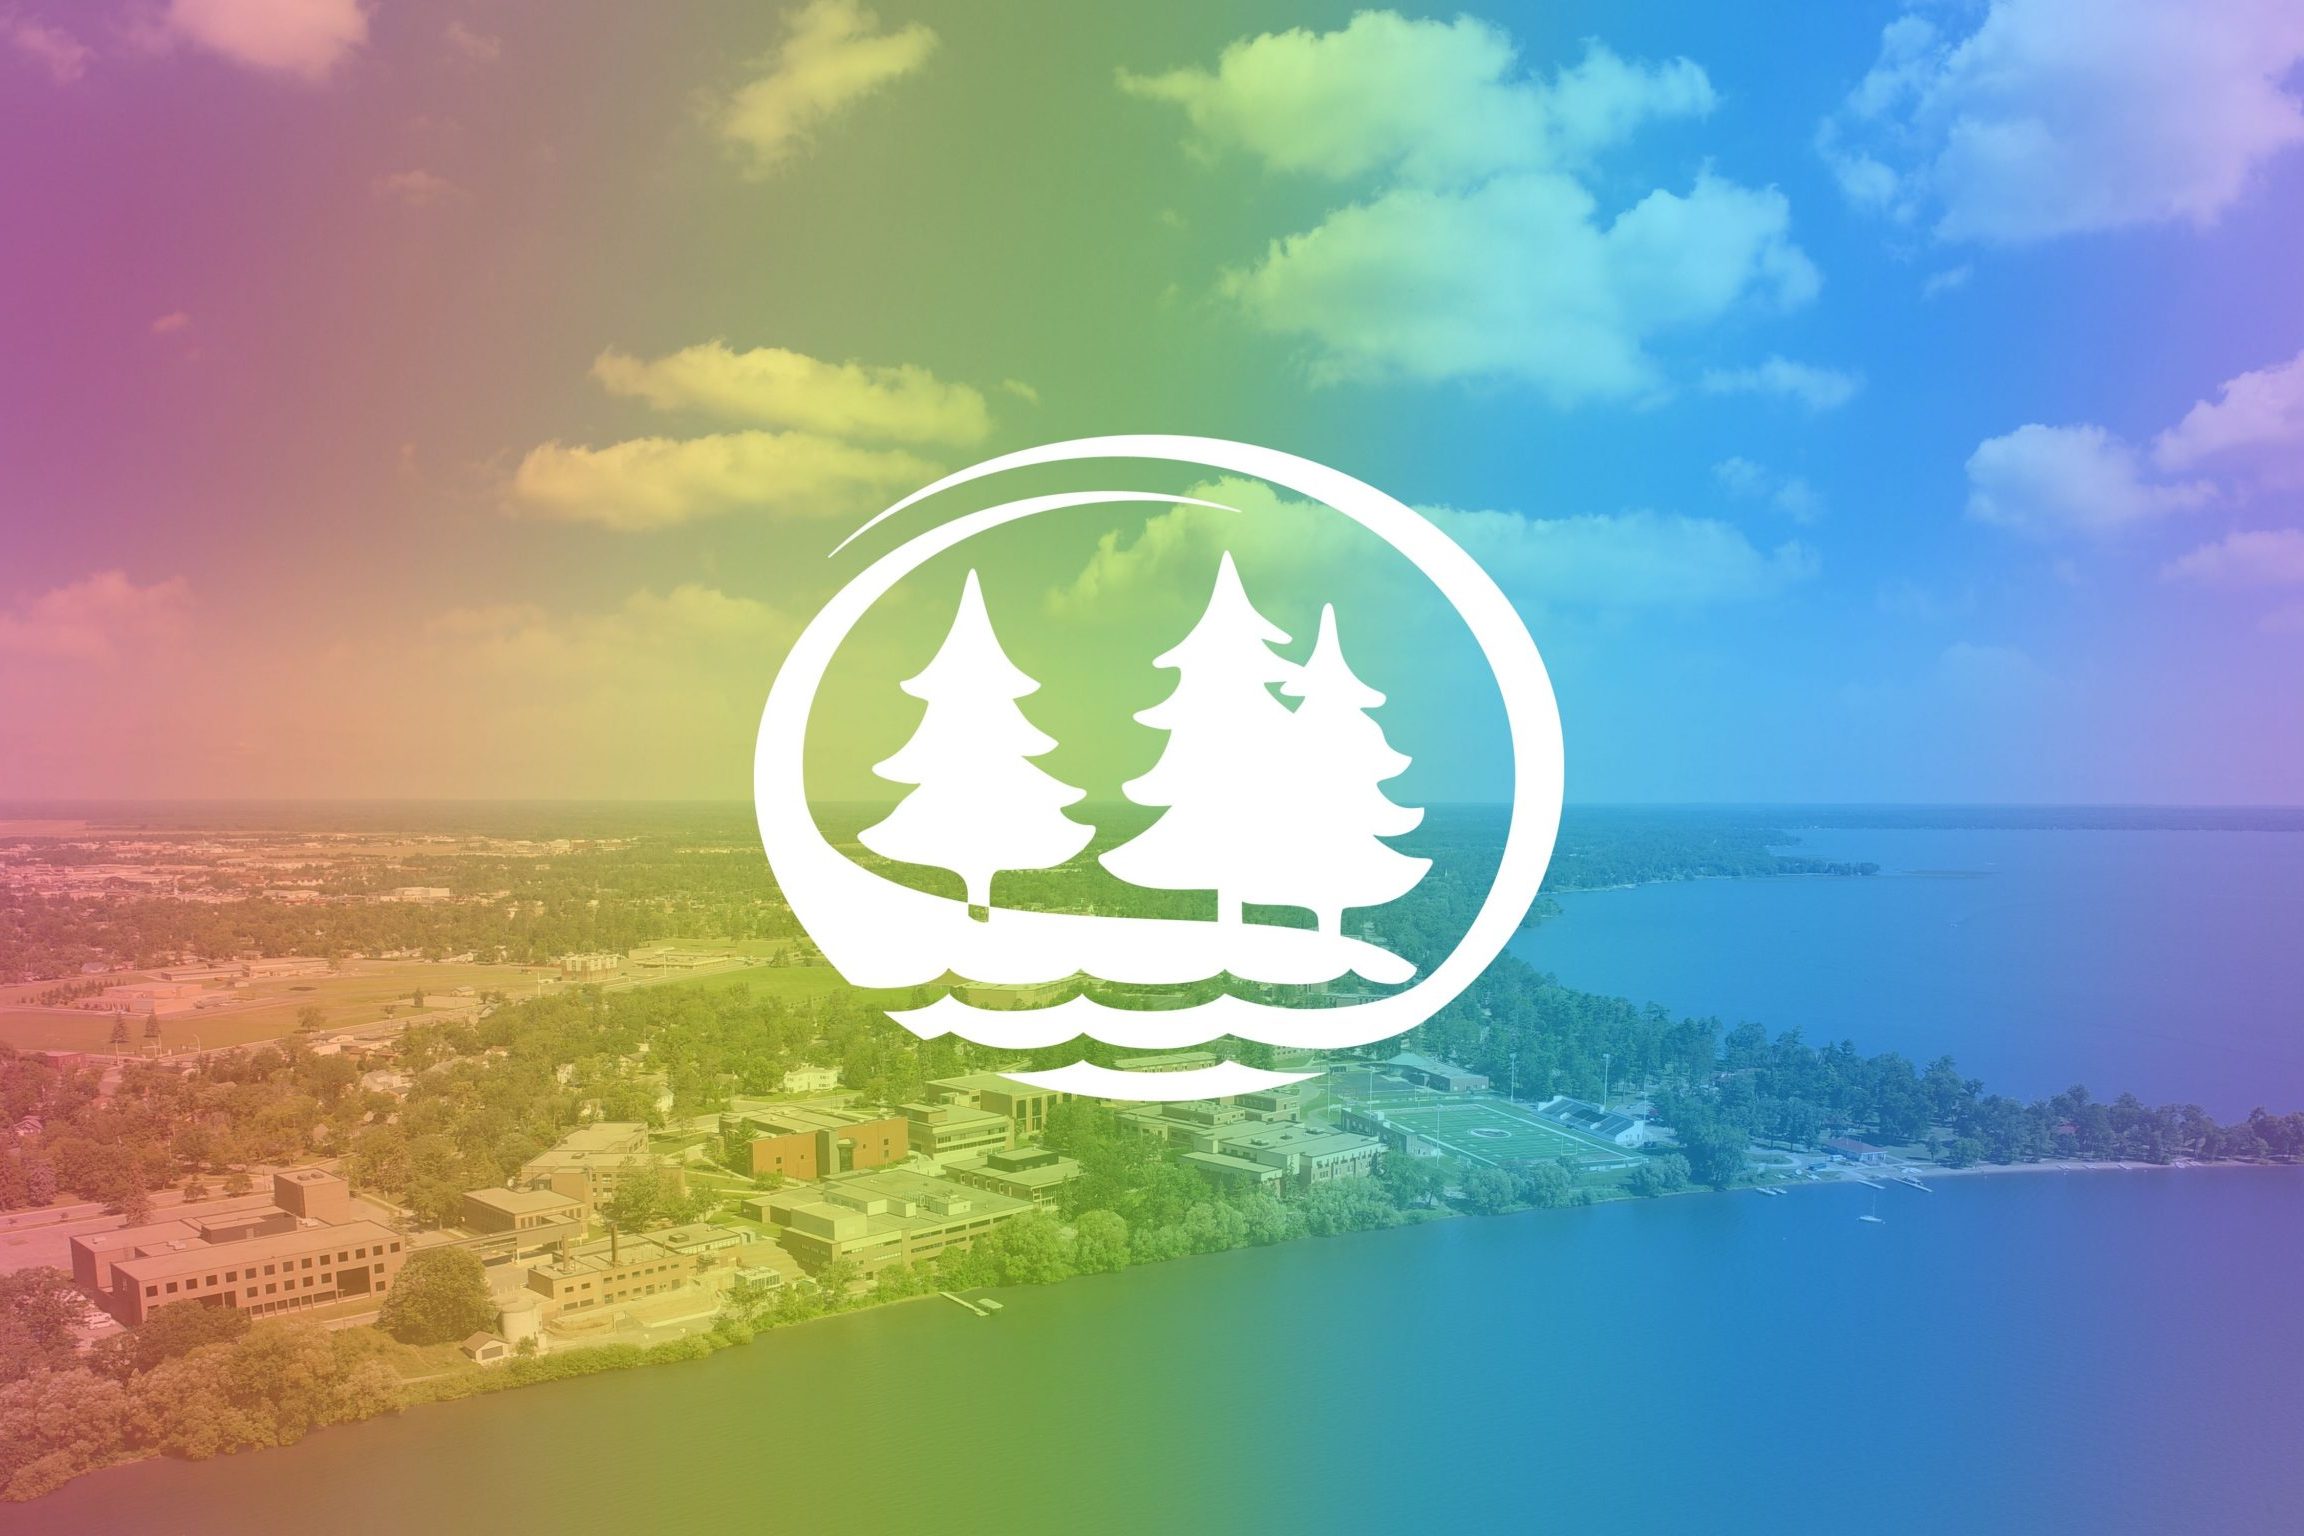 The BSU logo over a rainbow